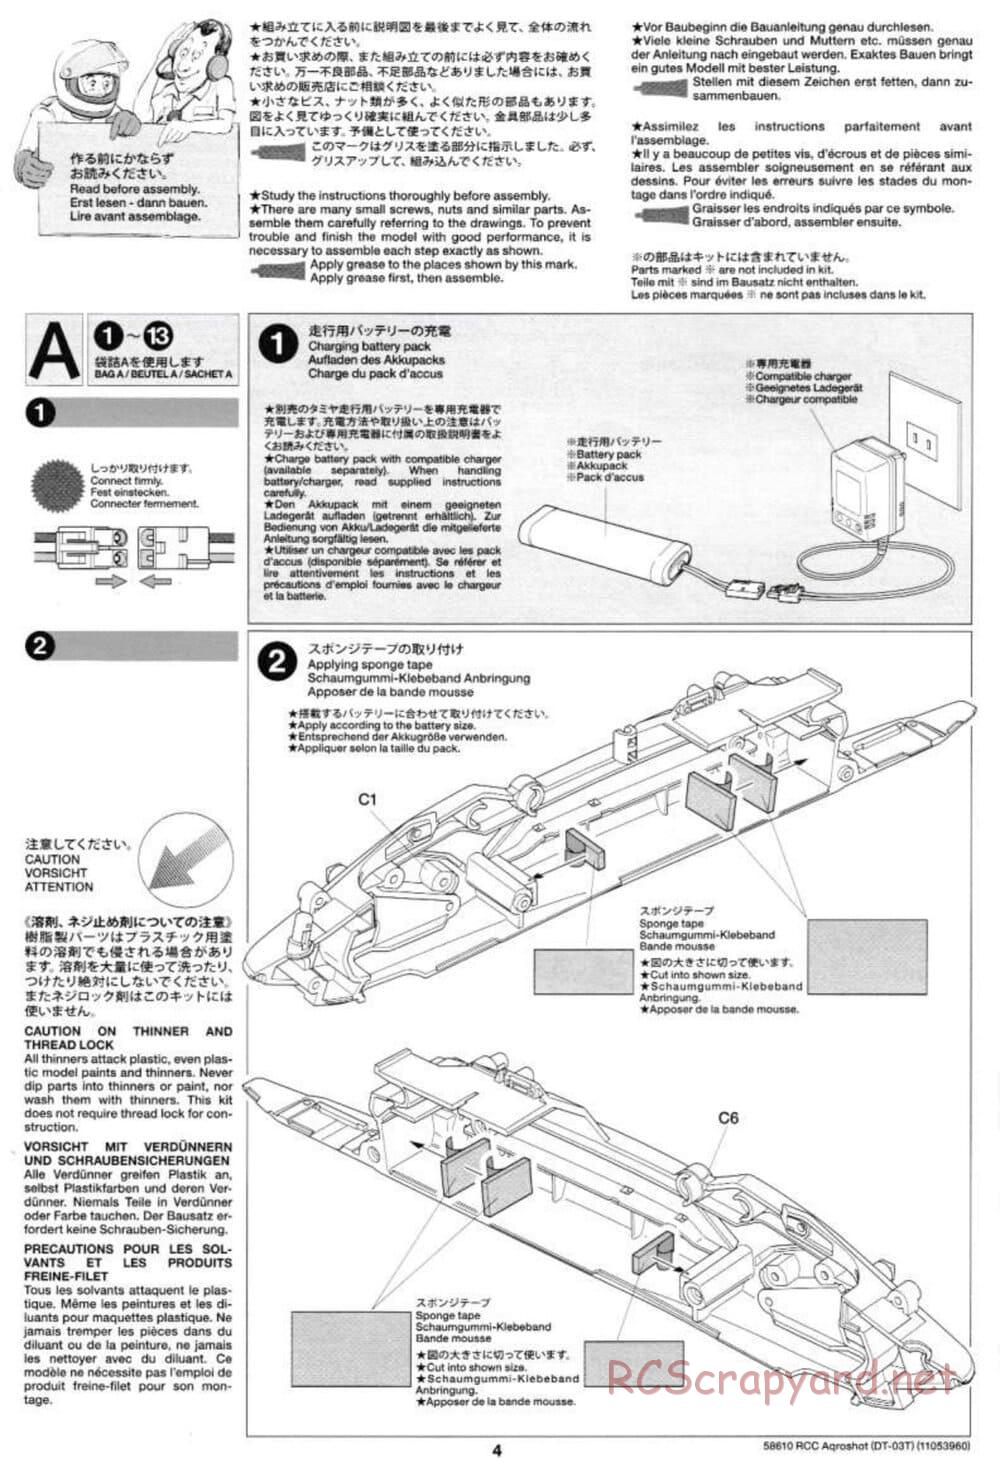 Tamiya - Aqroshot Chassis - Manual - Page 4